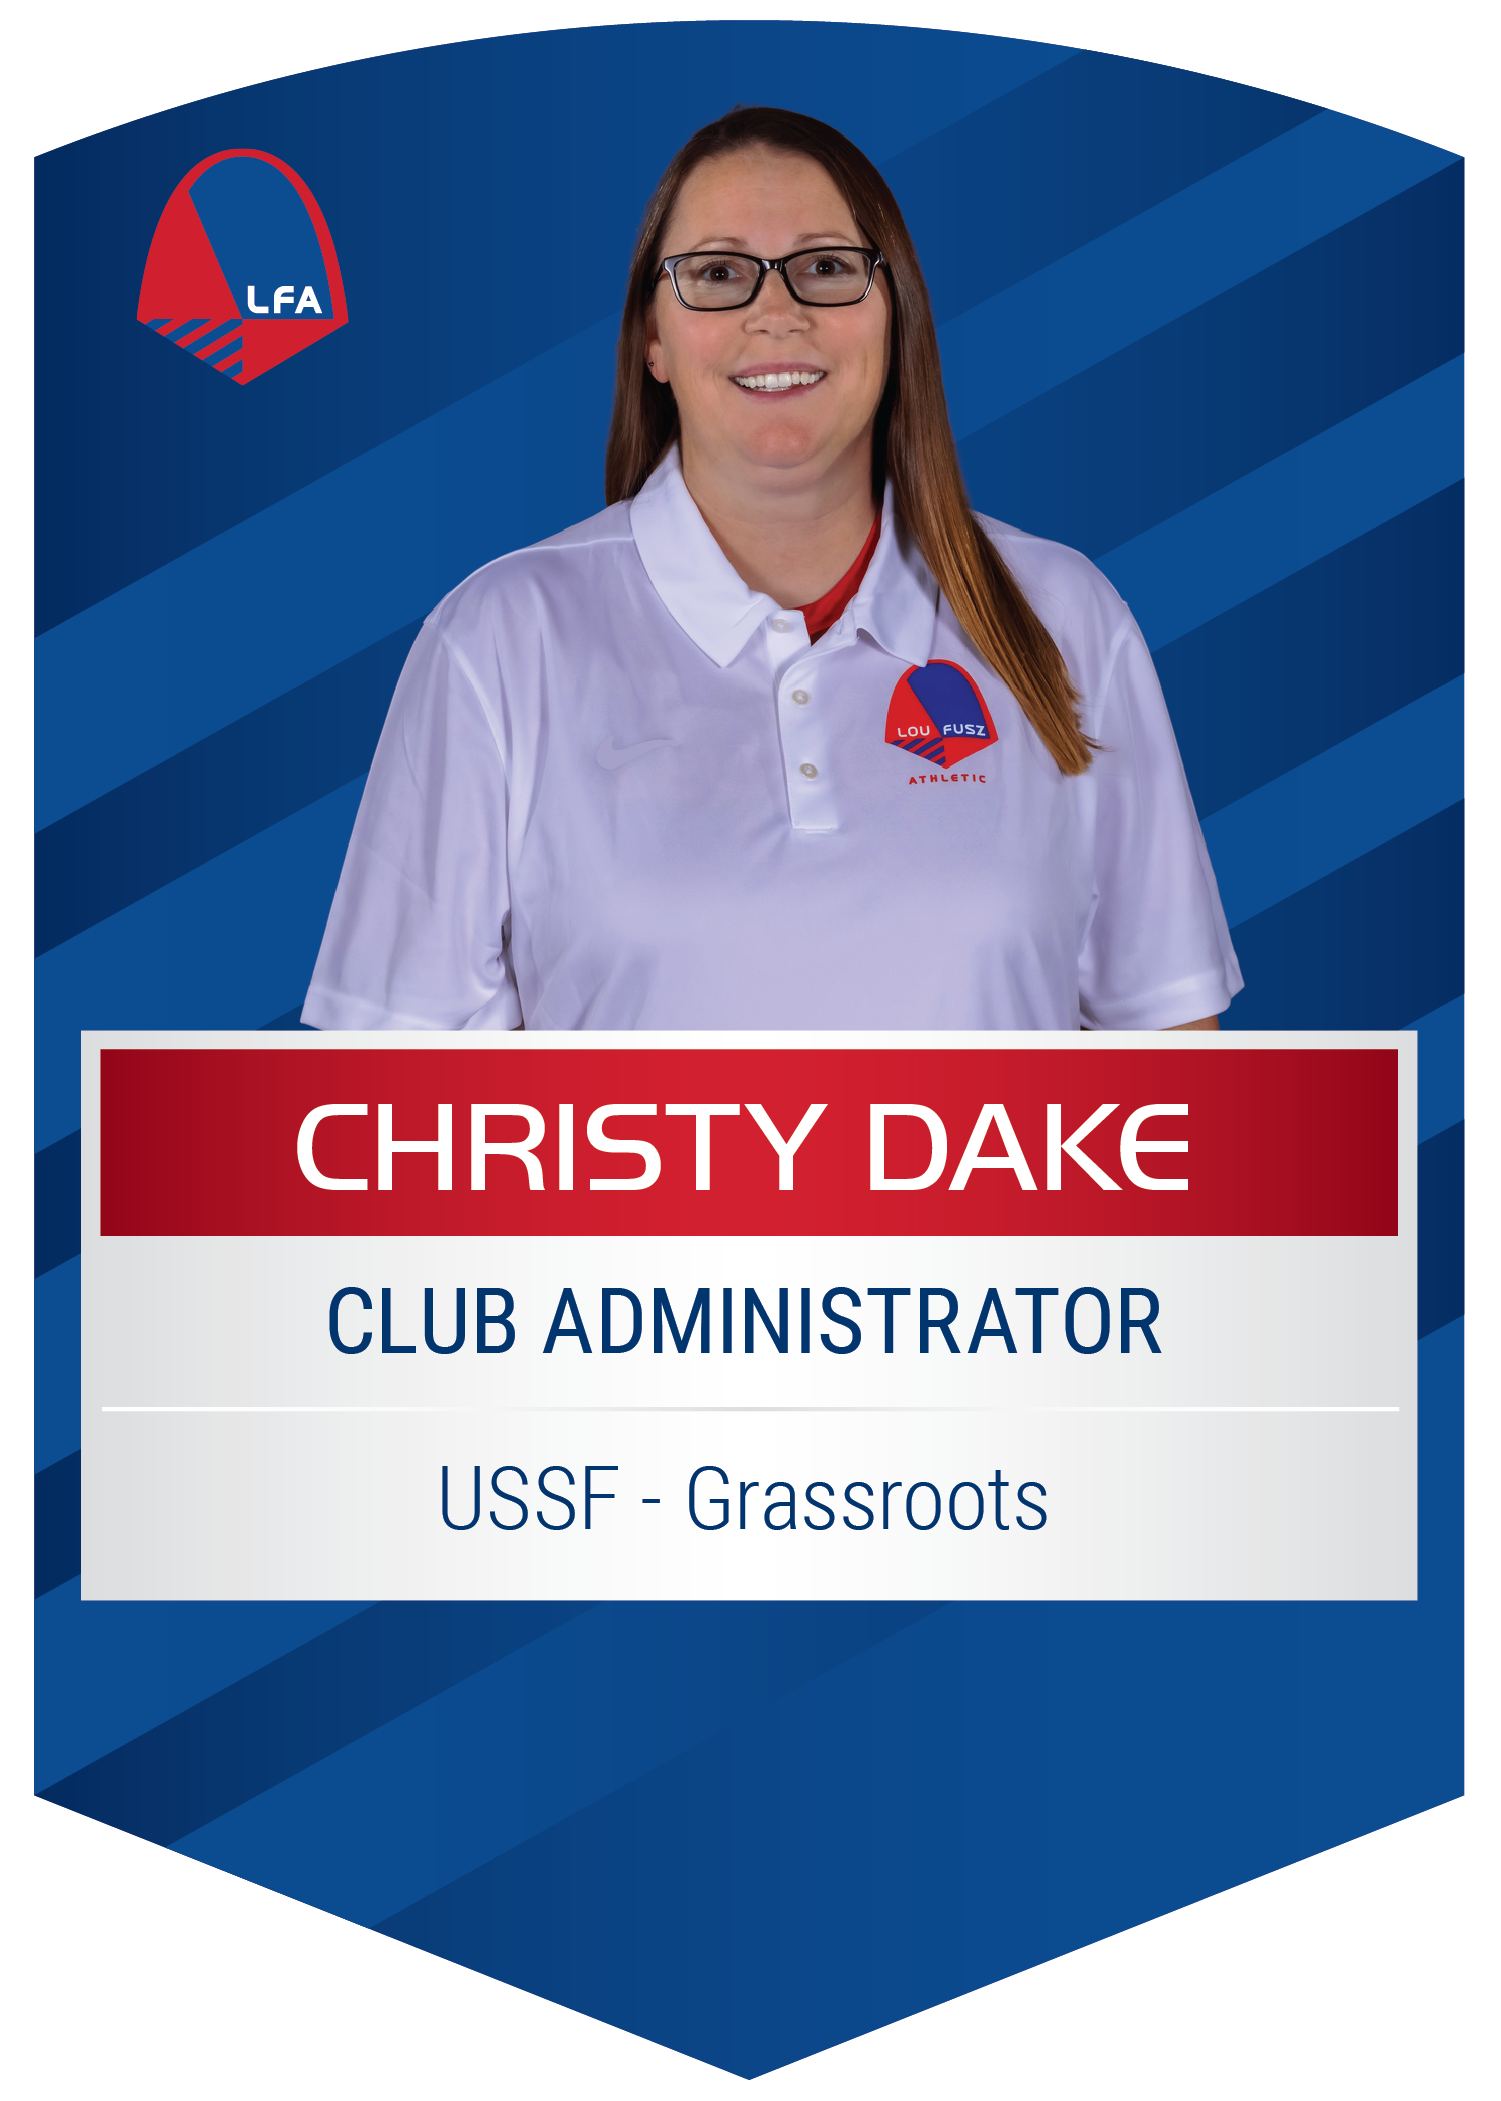 Christy Dake